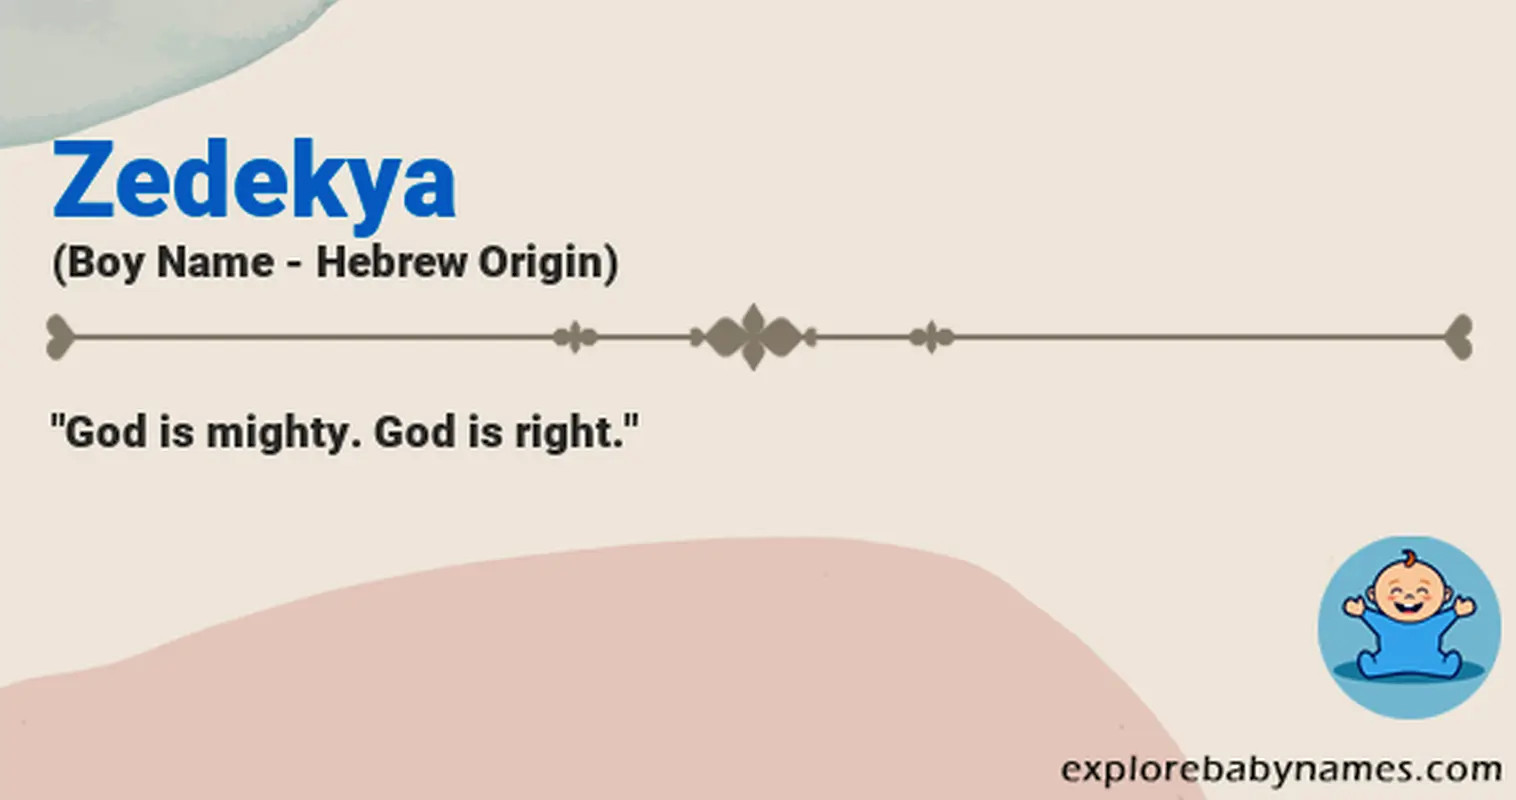 Meaning of Zedekya